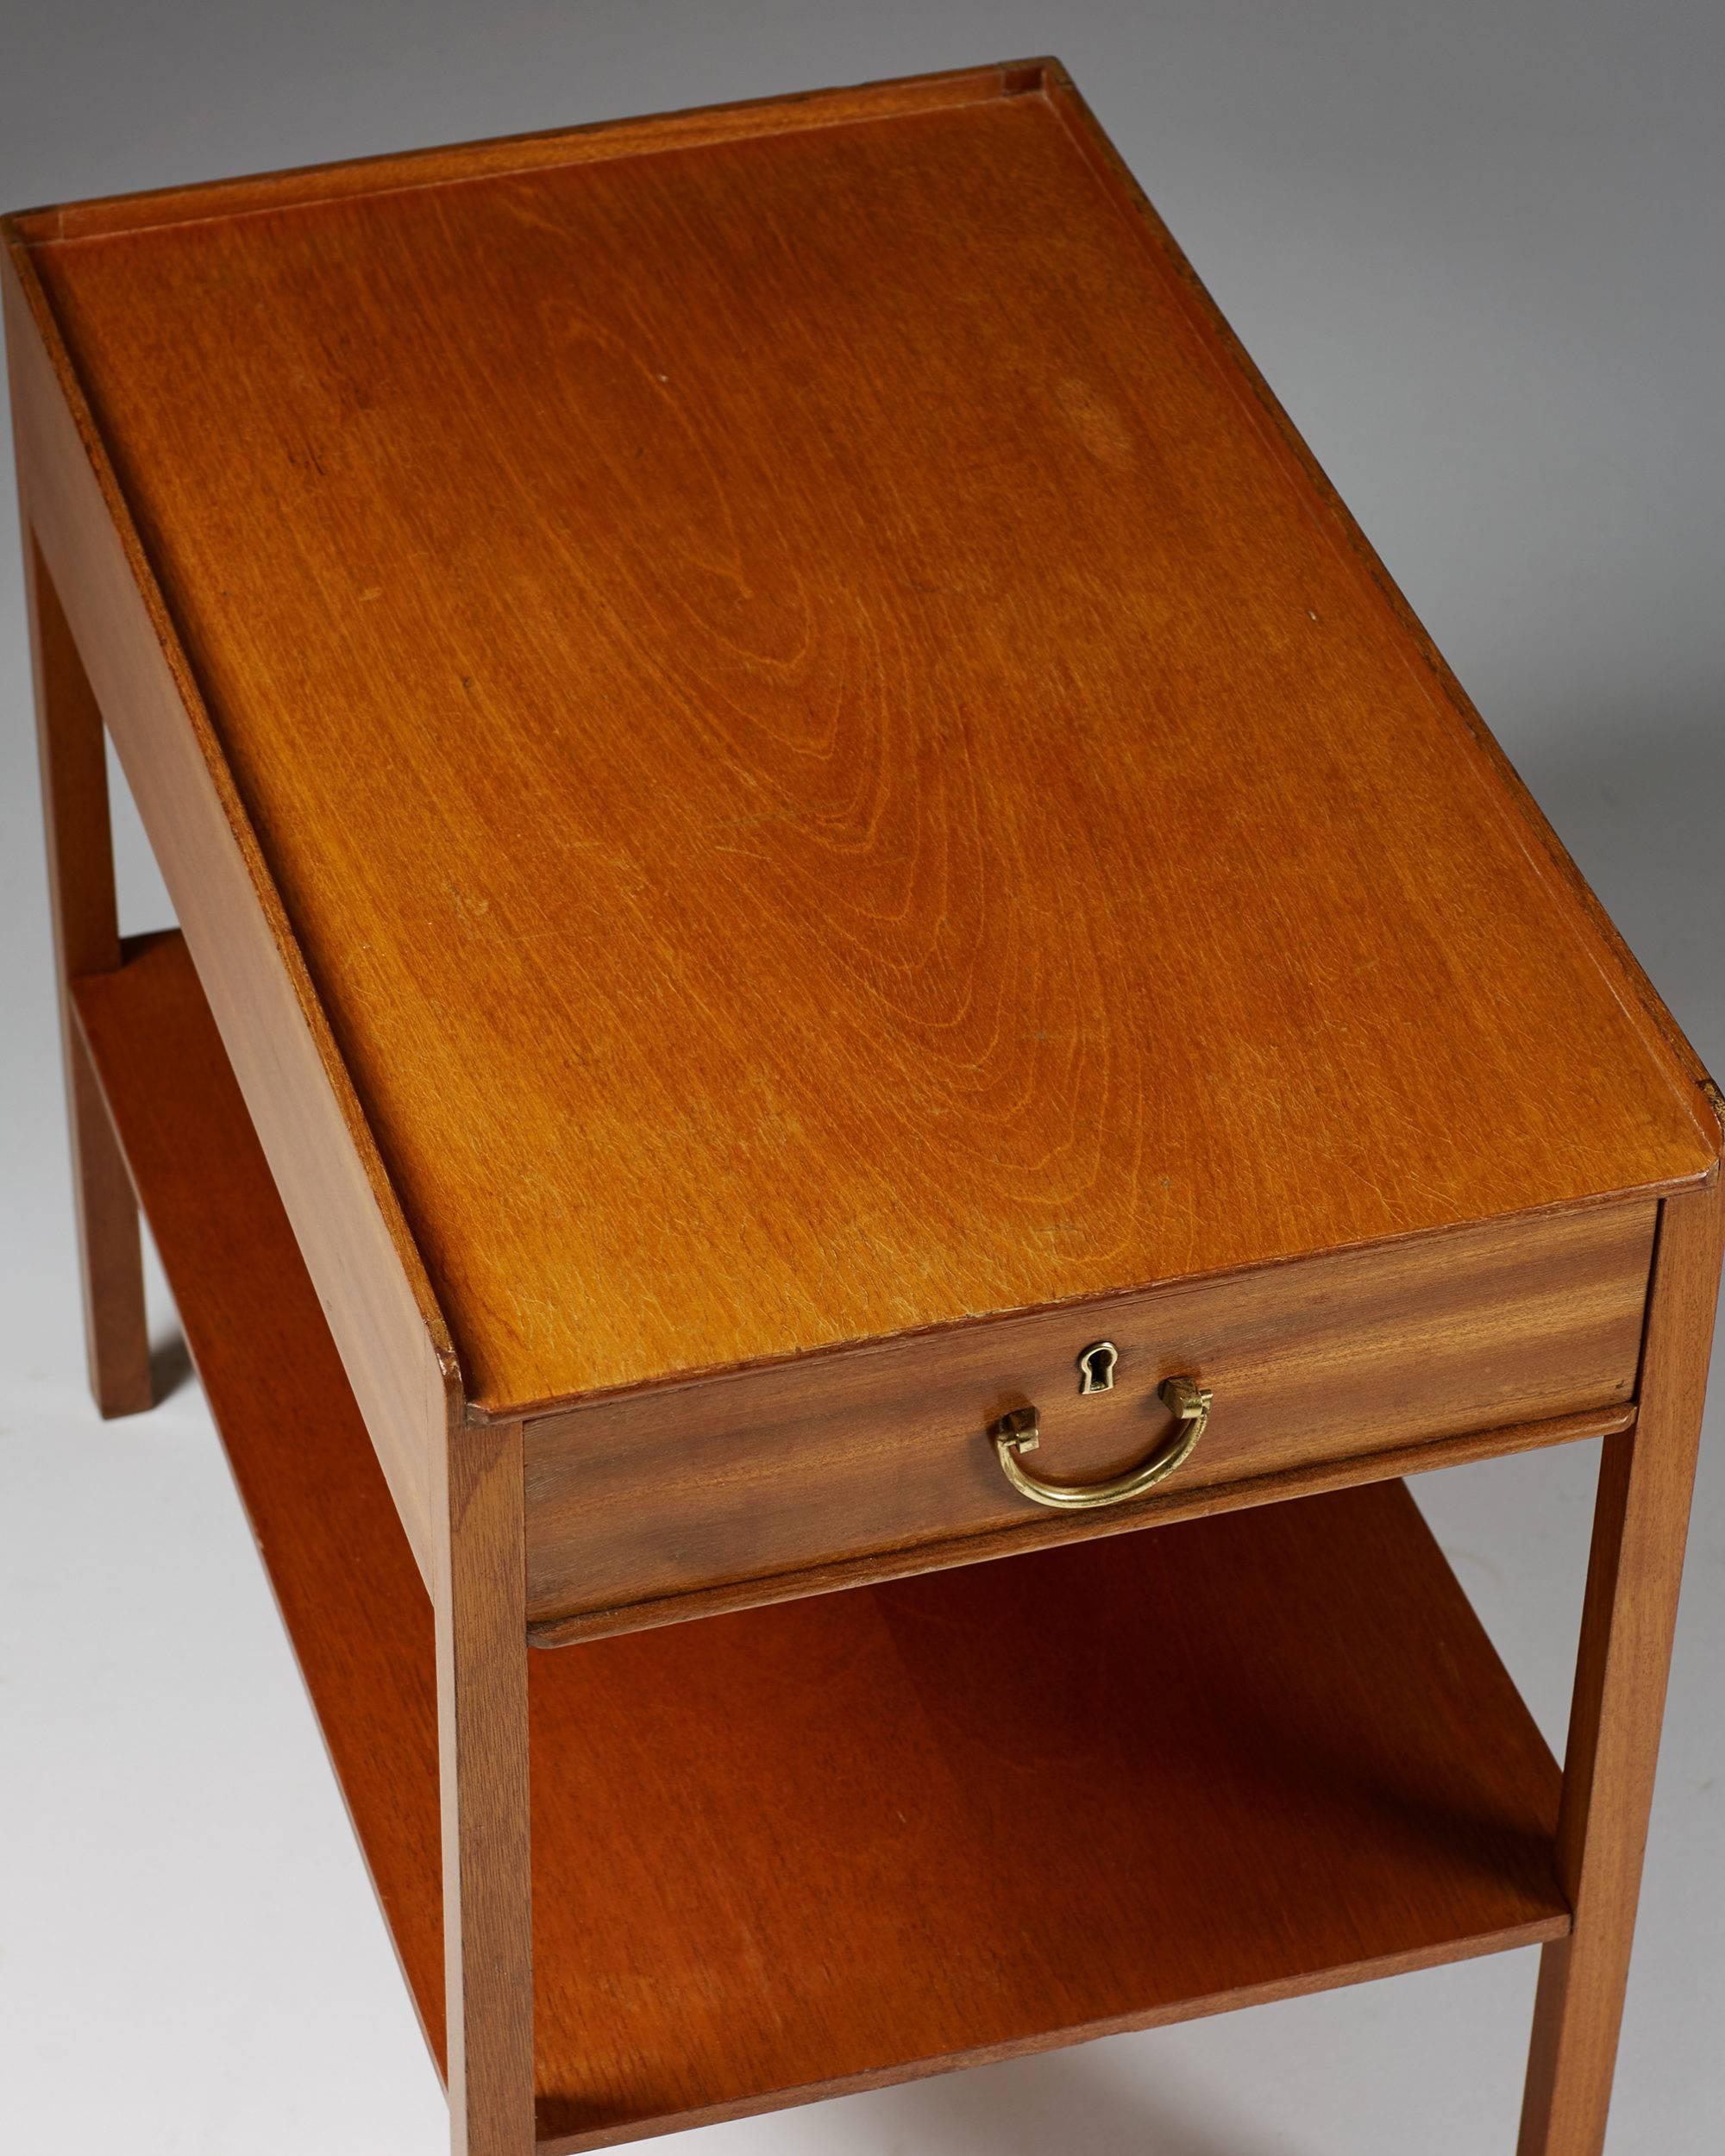 Mid-20th Century Bedside Table Designed by Josef Frank for Svenskt Tenn, Sweden, 1950s